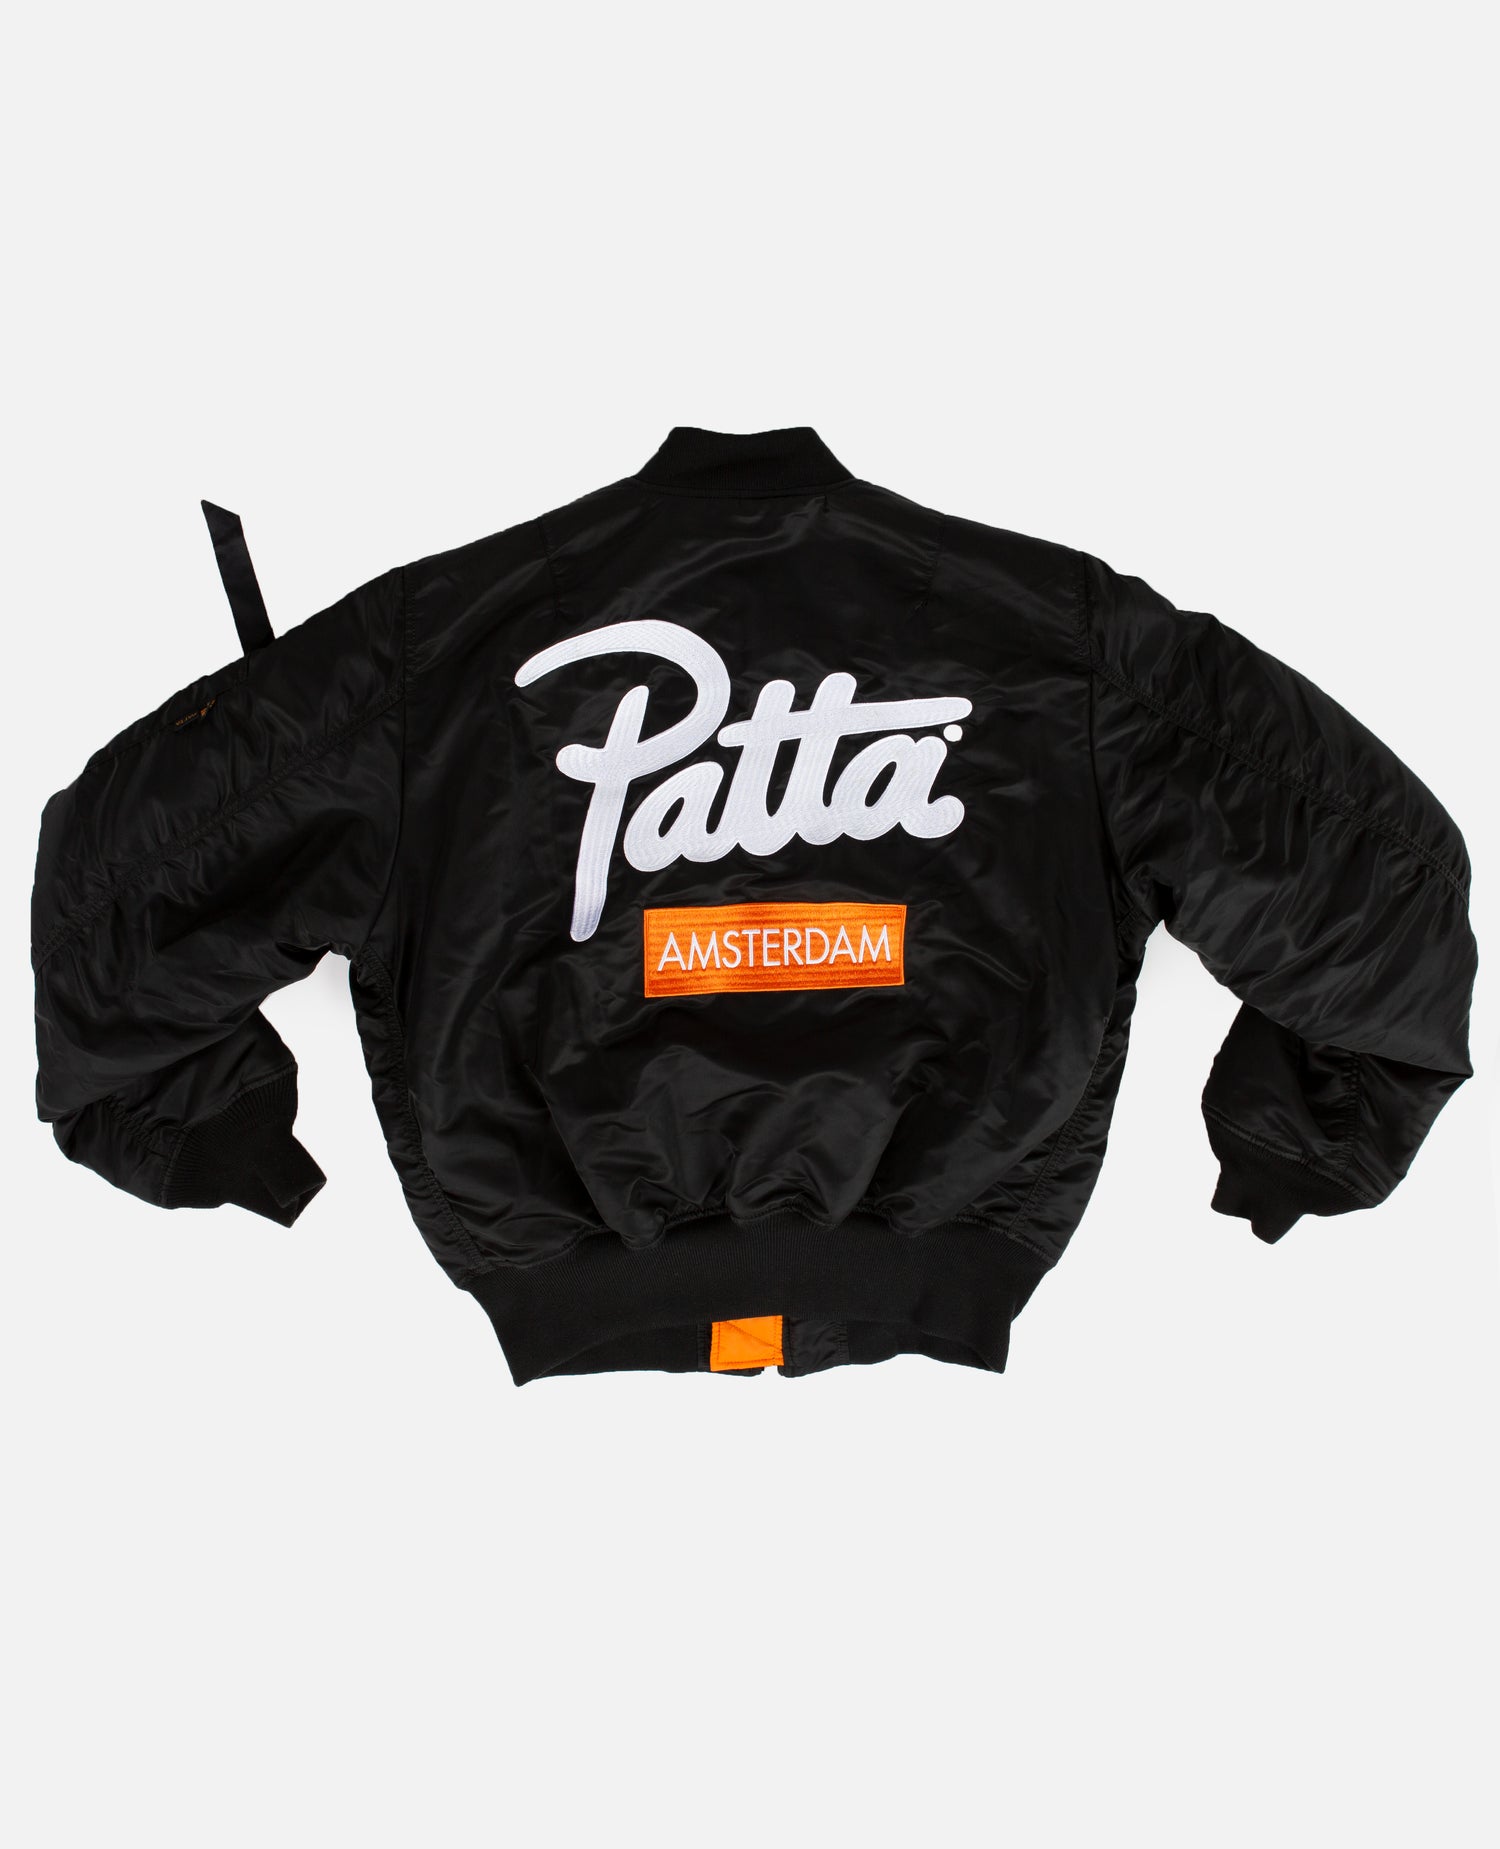 Esclusiva del negozio: Giacca Patta x Alpha Industries MA-1 Amsterdam (nera/arancione)